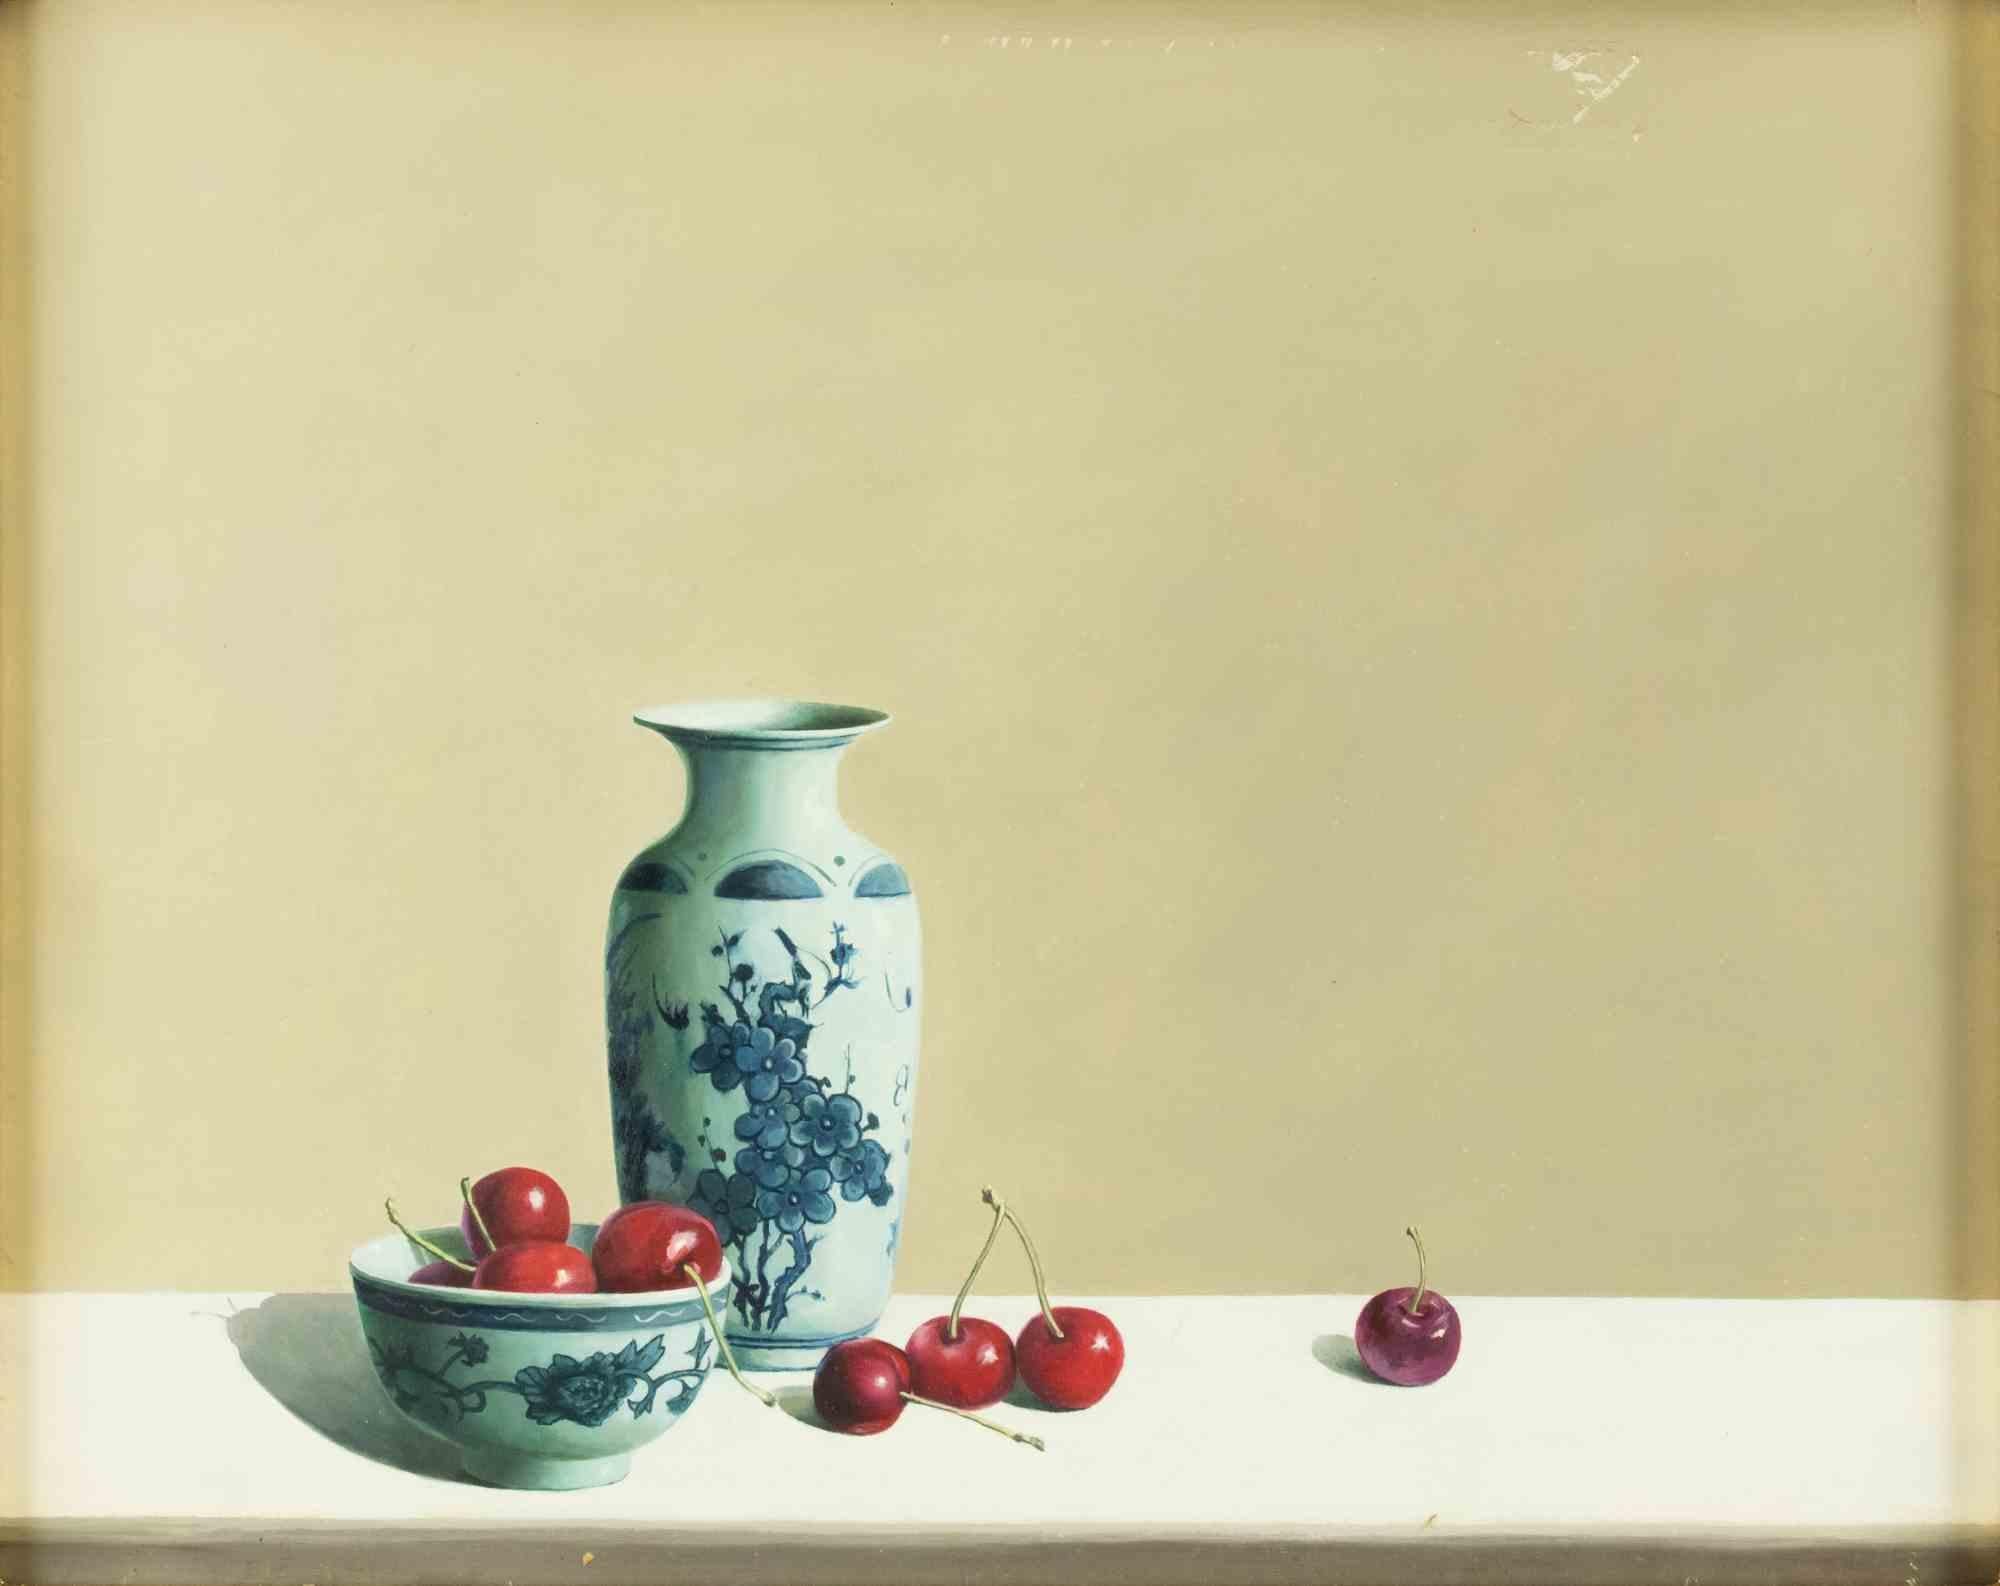 Nature morte est une peinture à l'huile originale réalisée  par Zhang Wei Guang (Miroir) dans les années 2000.

Inclut le cadre.

Très bonnes conditions.

Zhang Wei Guang, également appelé "miroir", est né à Helong Jang, en Chine, en 1968. Après